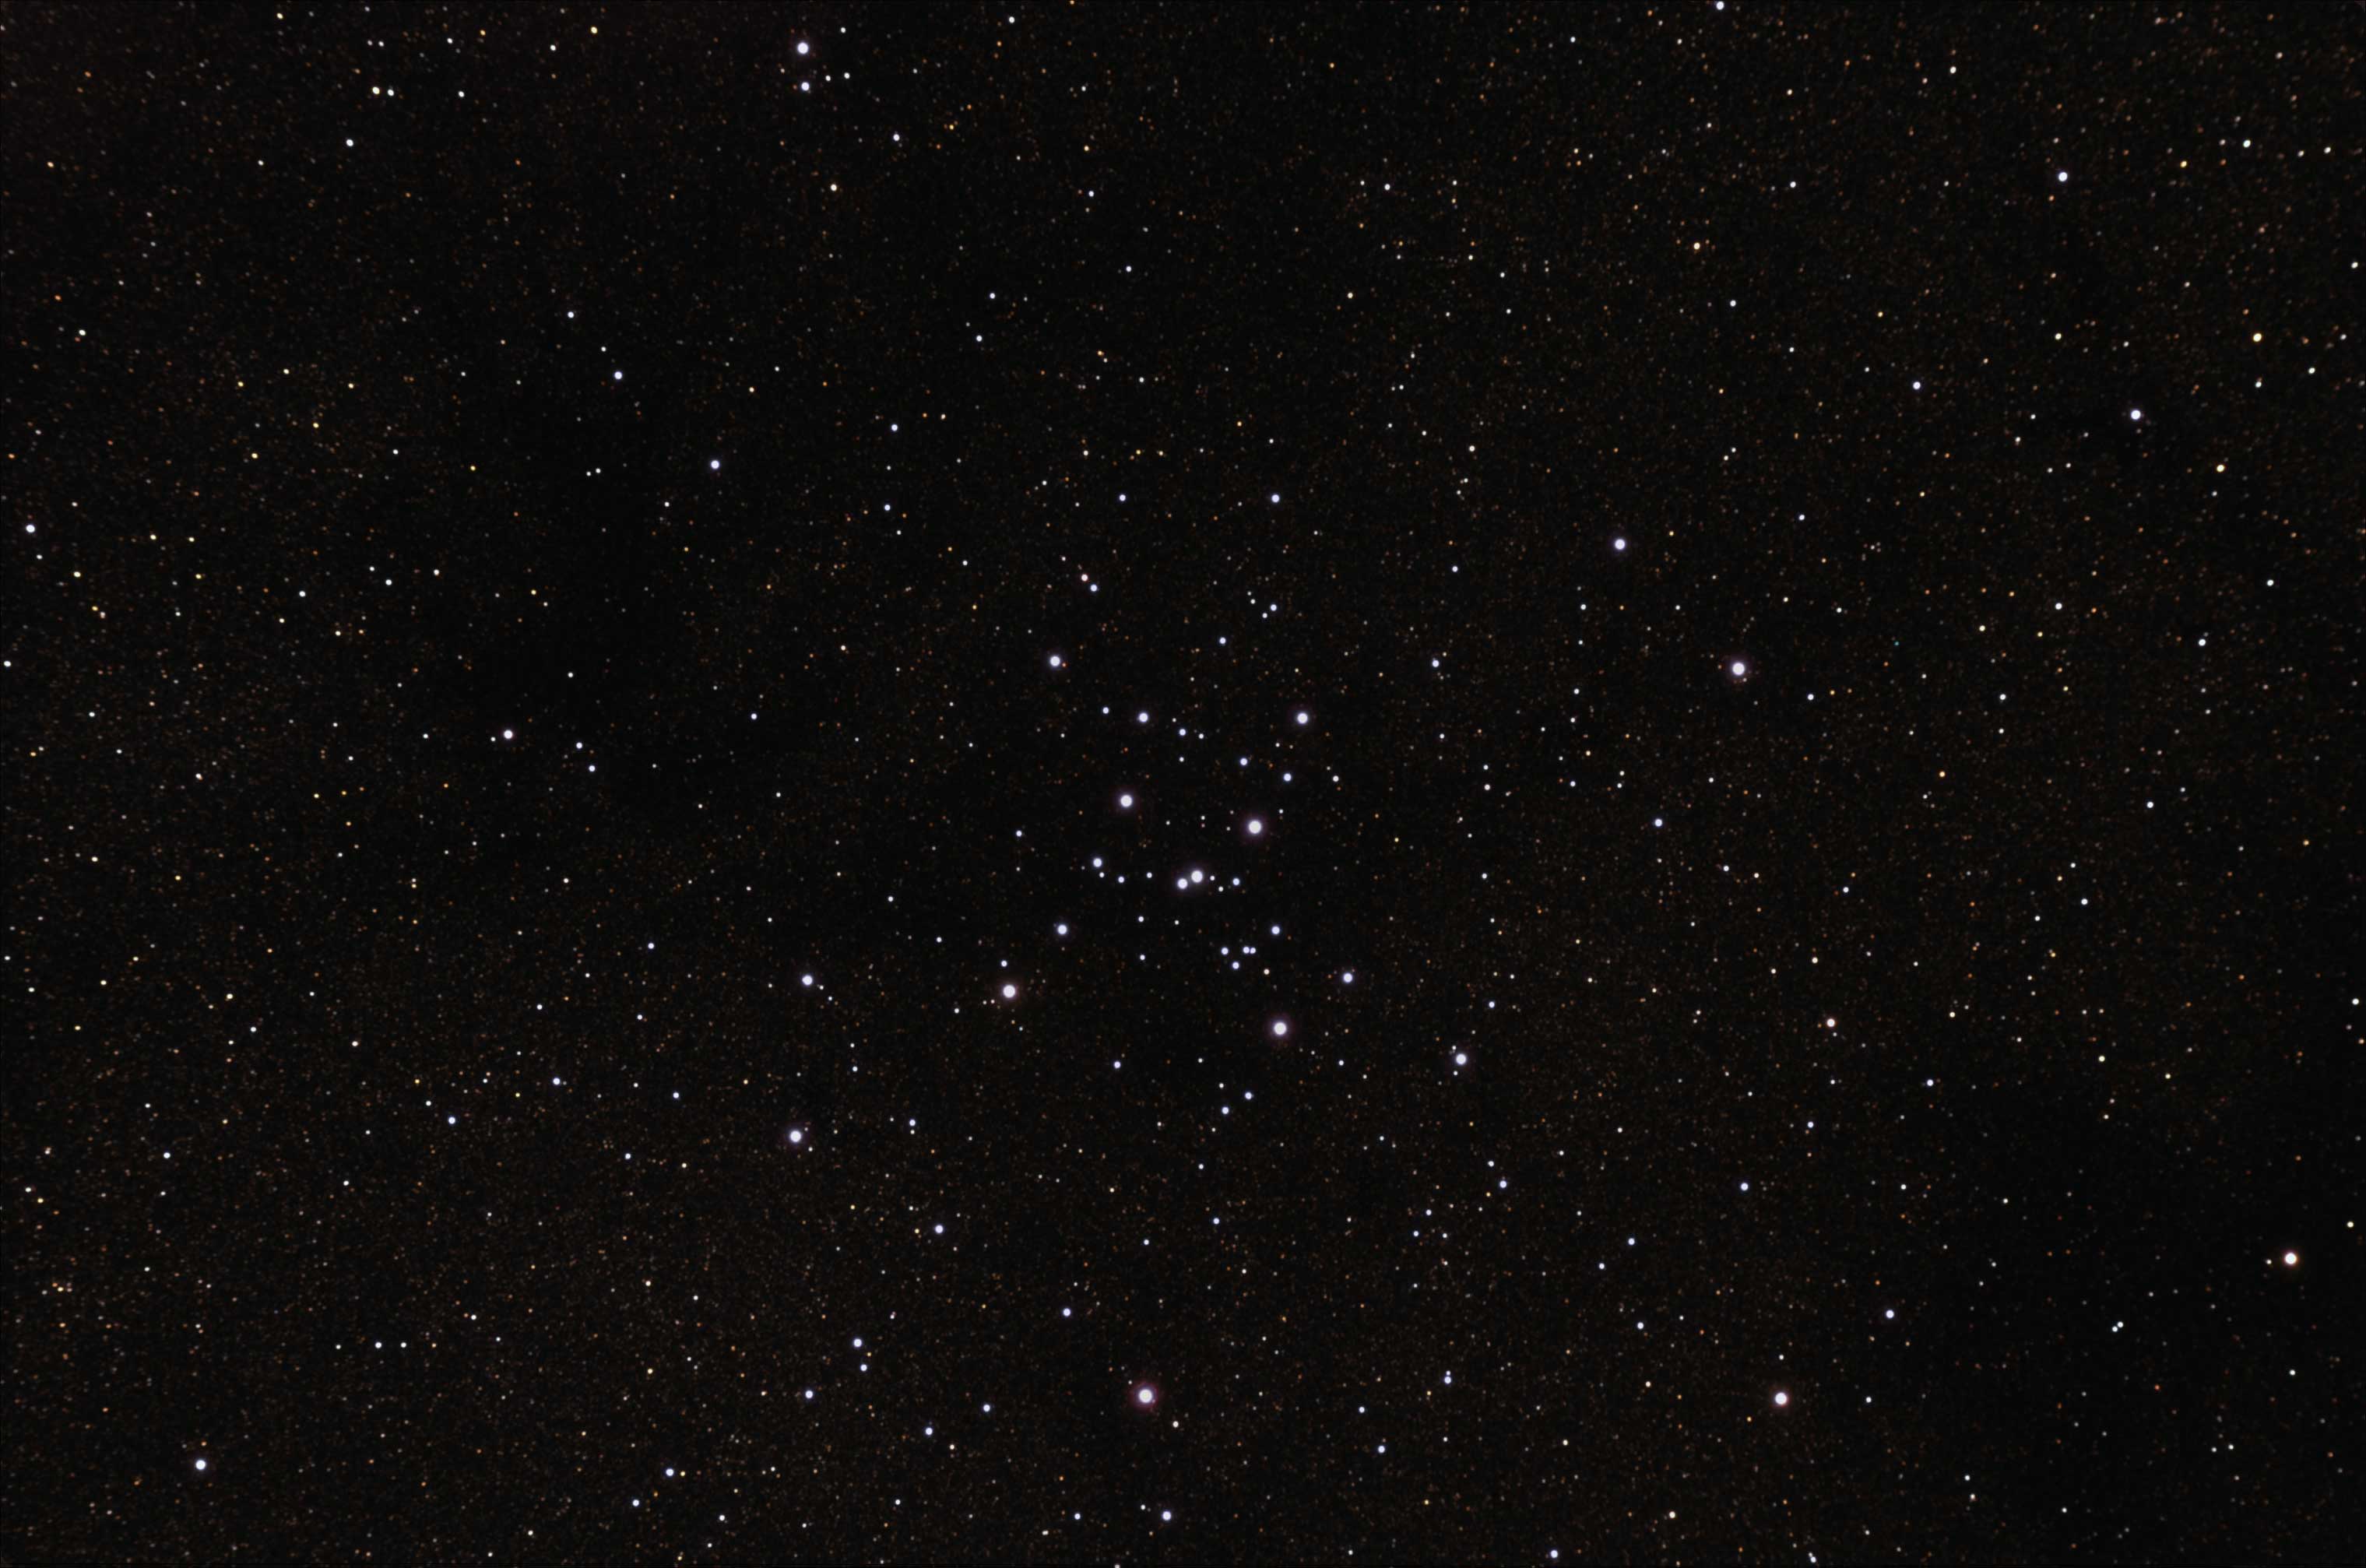 NGC 6475